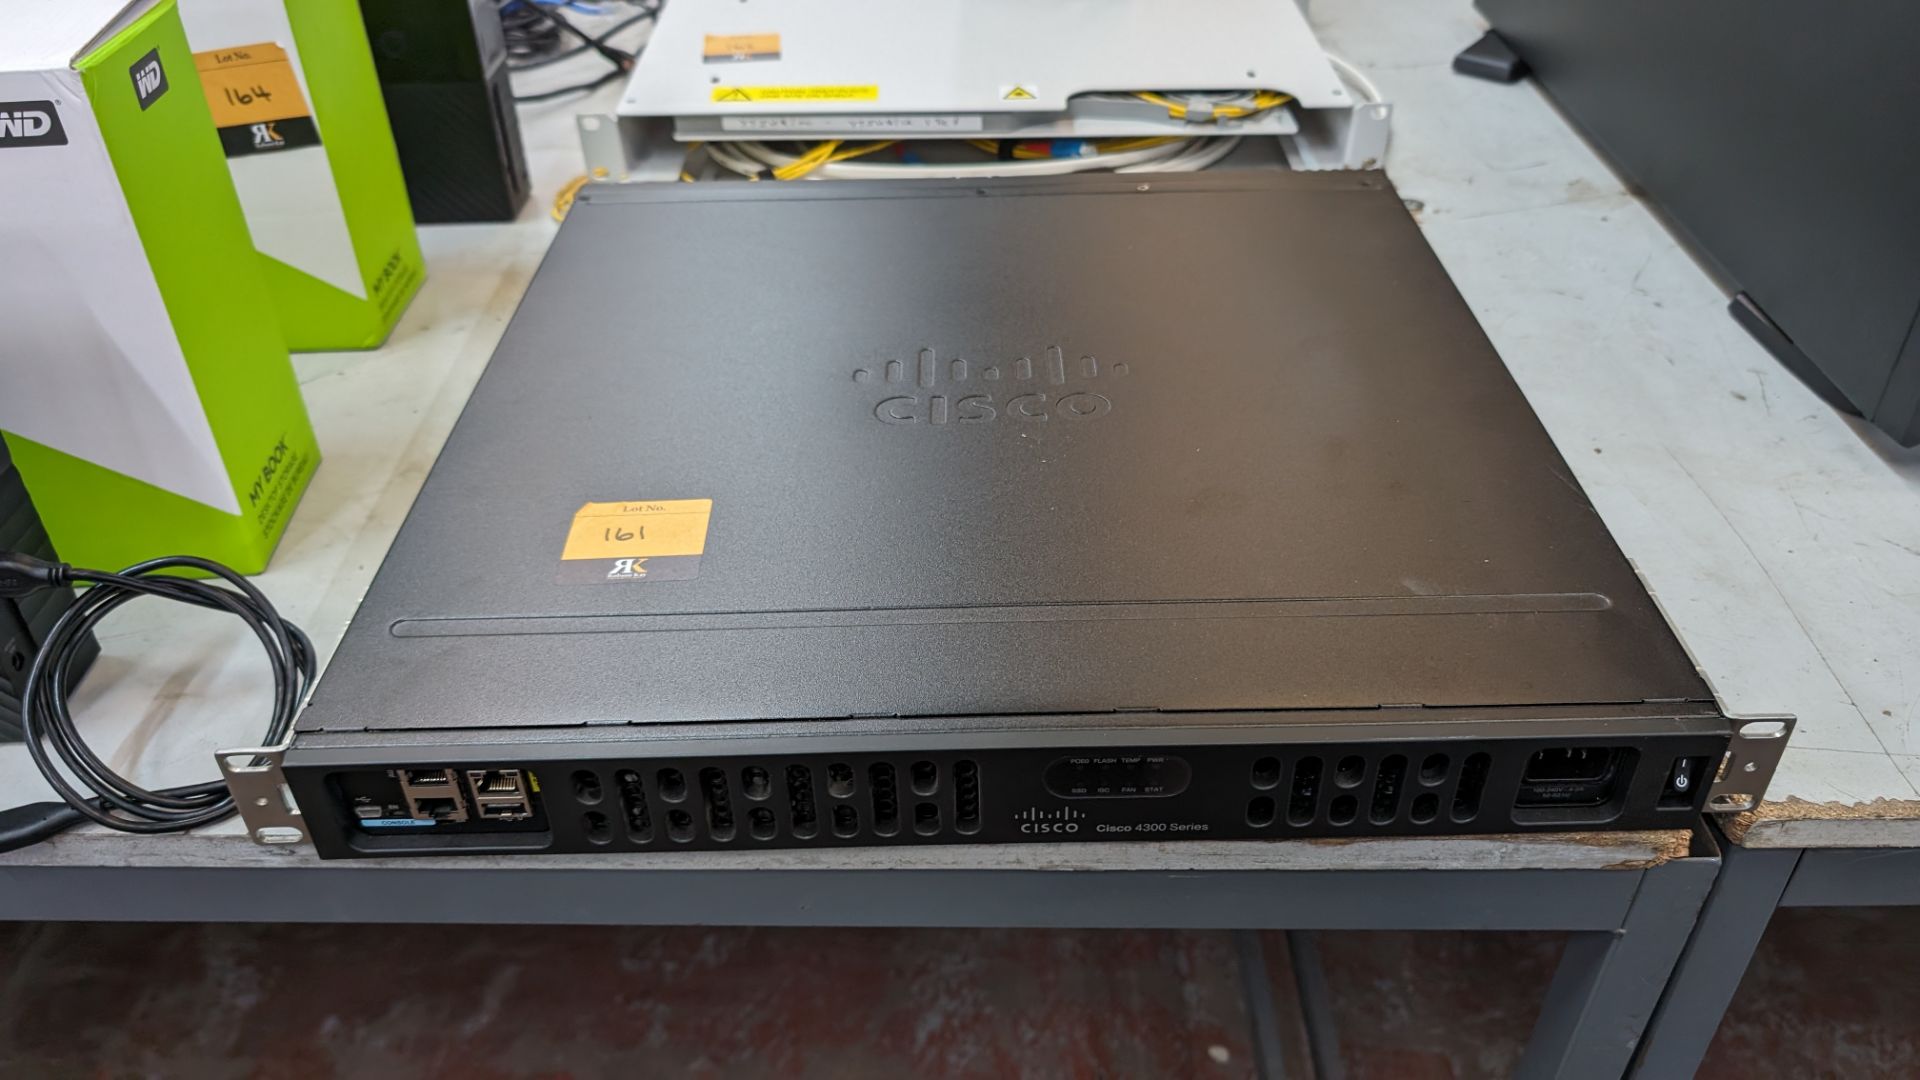 Cisco rack mountable router model ISR4331